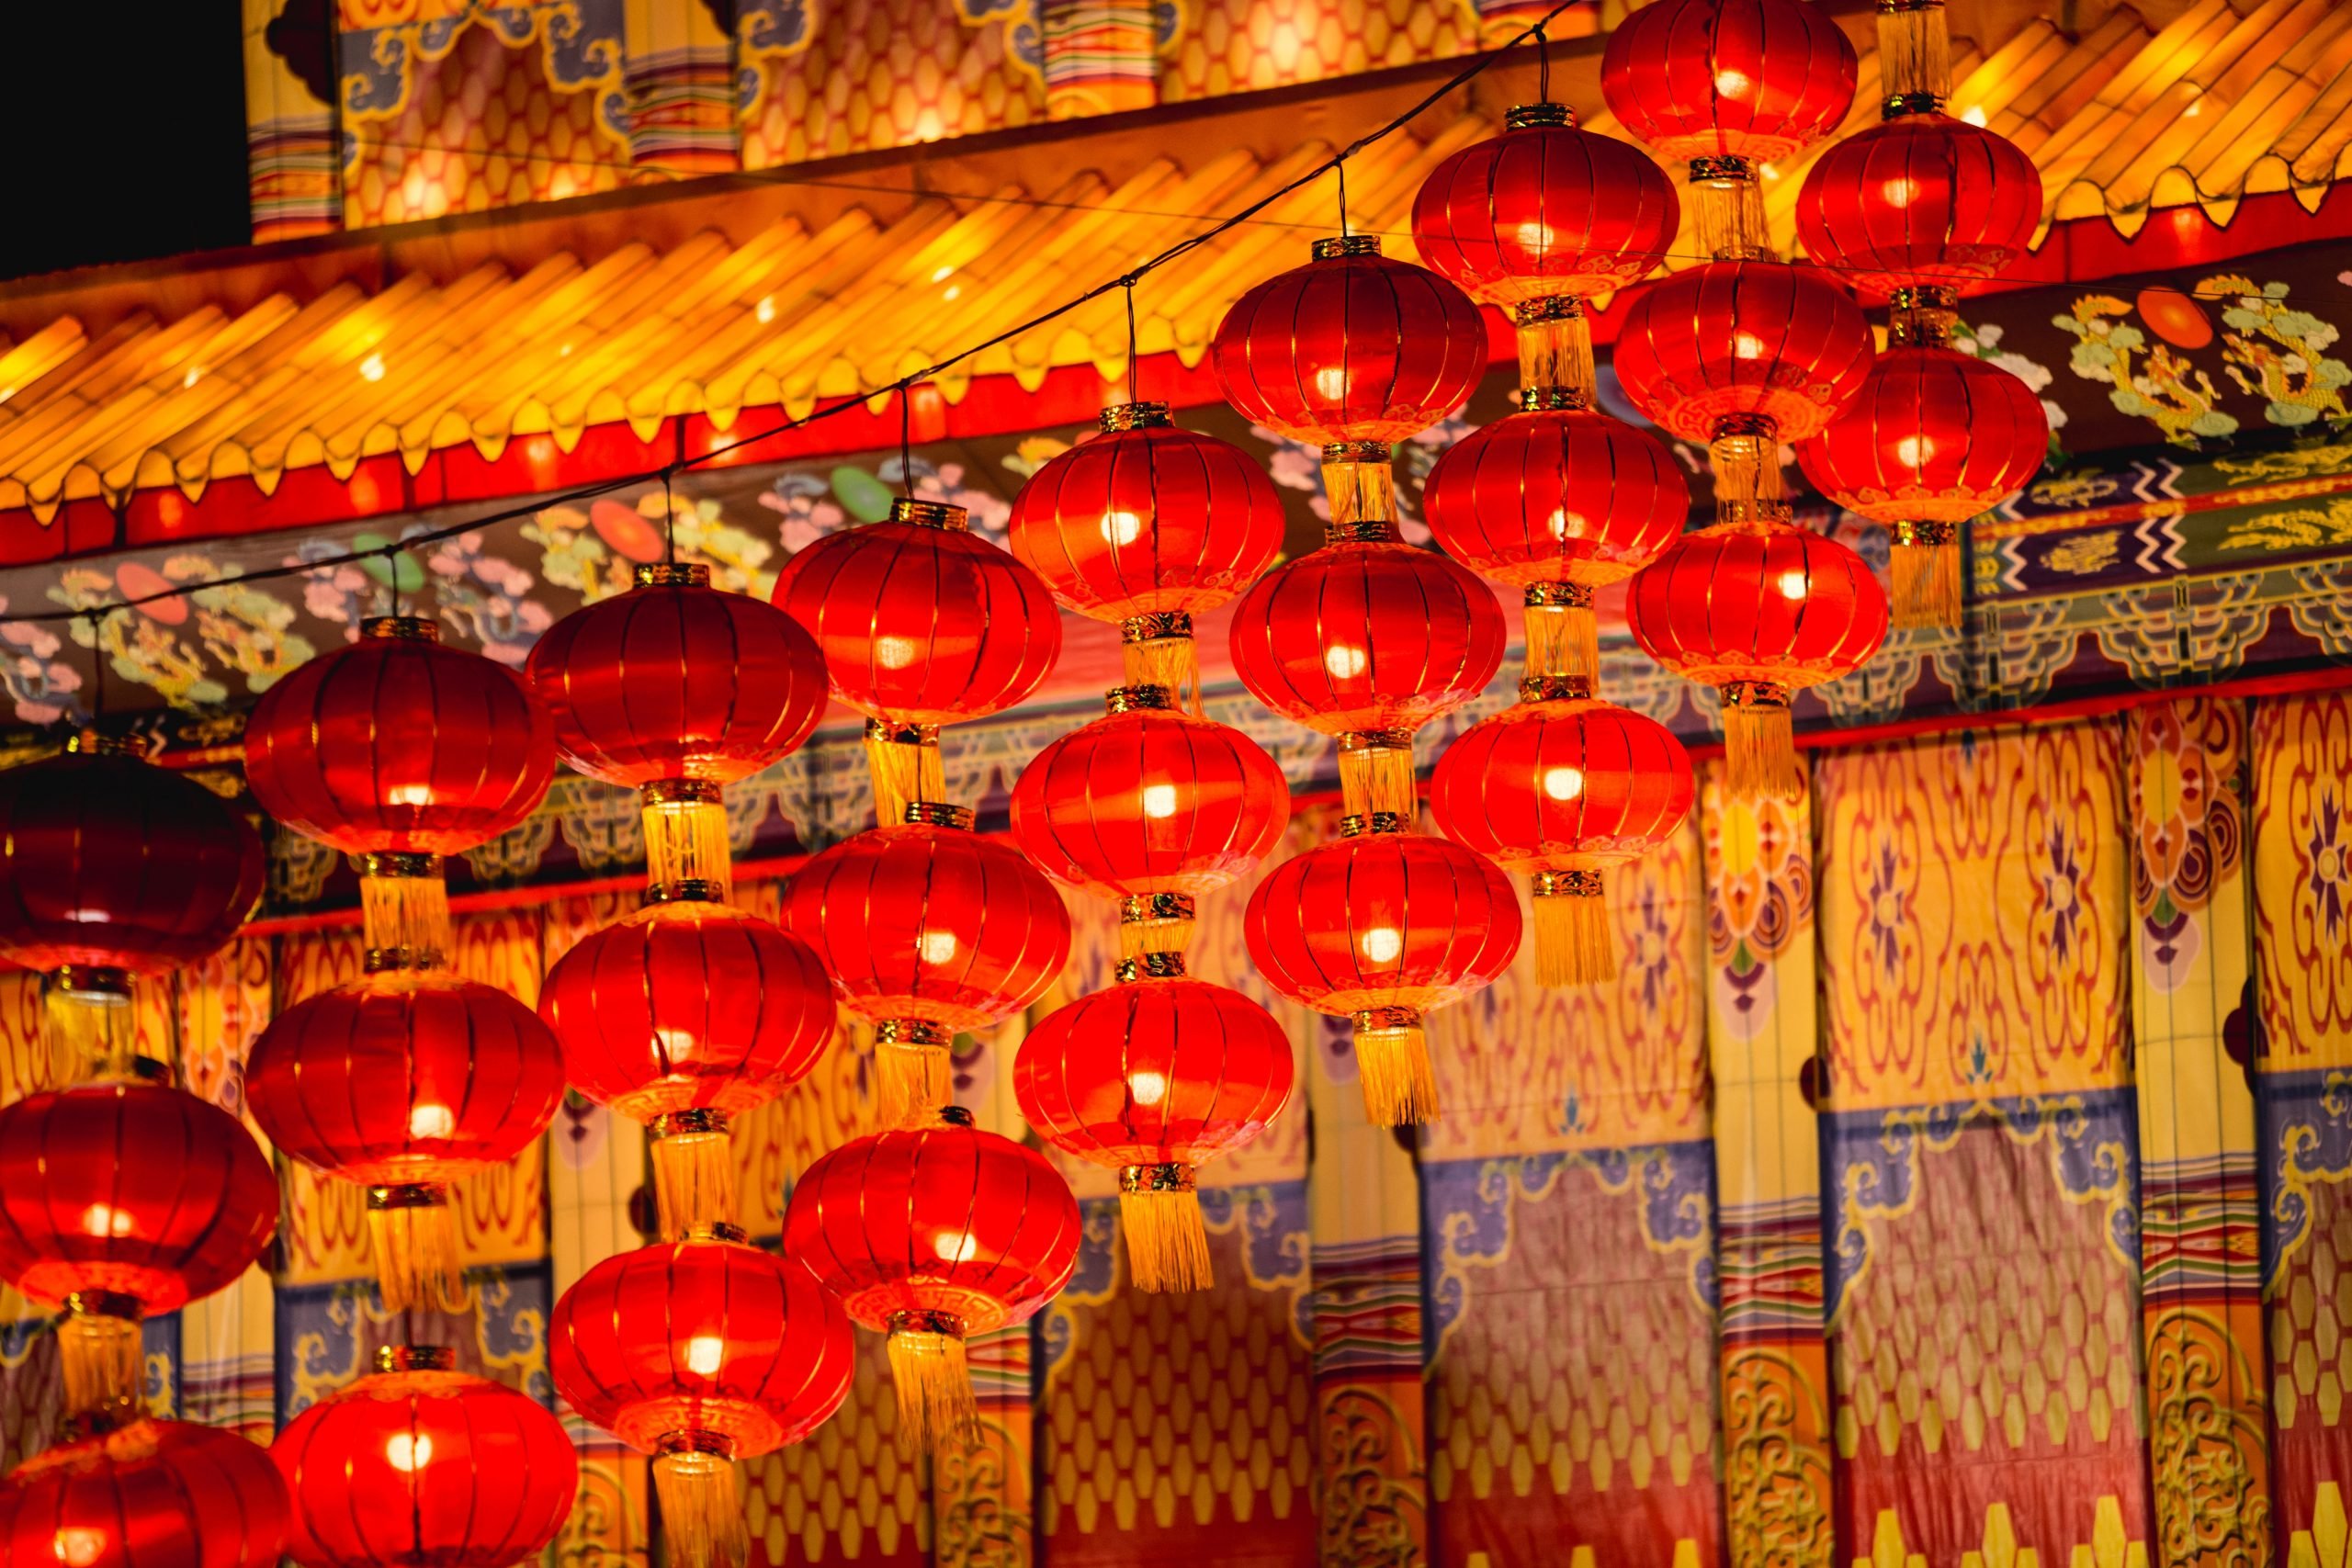 Cinque curiosità sul capodanno cinese raccontate da un cinese